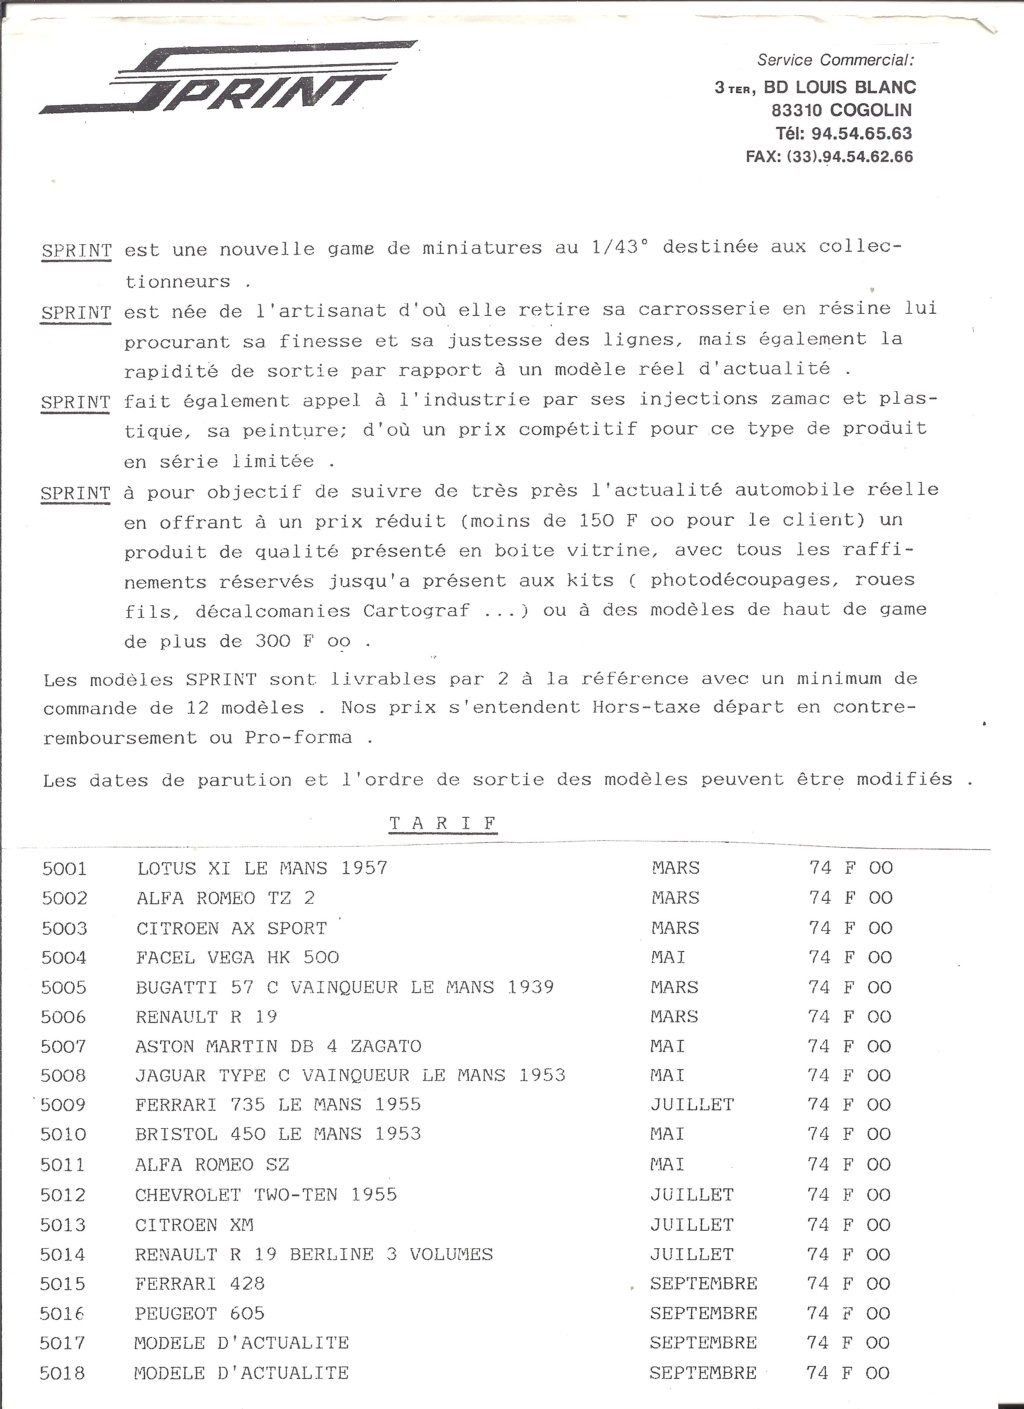 [PROVENCE MOULAGE 1989] Pochette avec catalogues et tarif revendeur 1989 Proven15